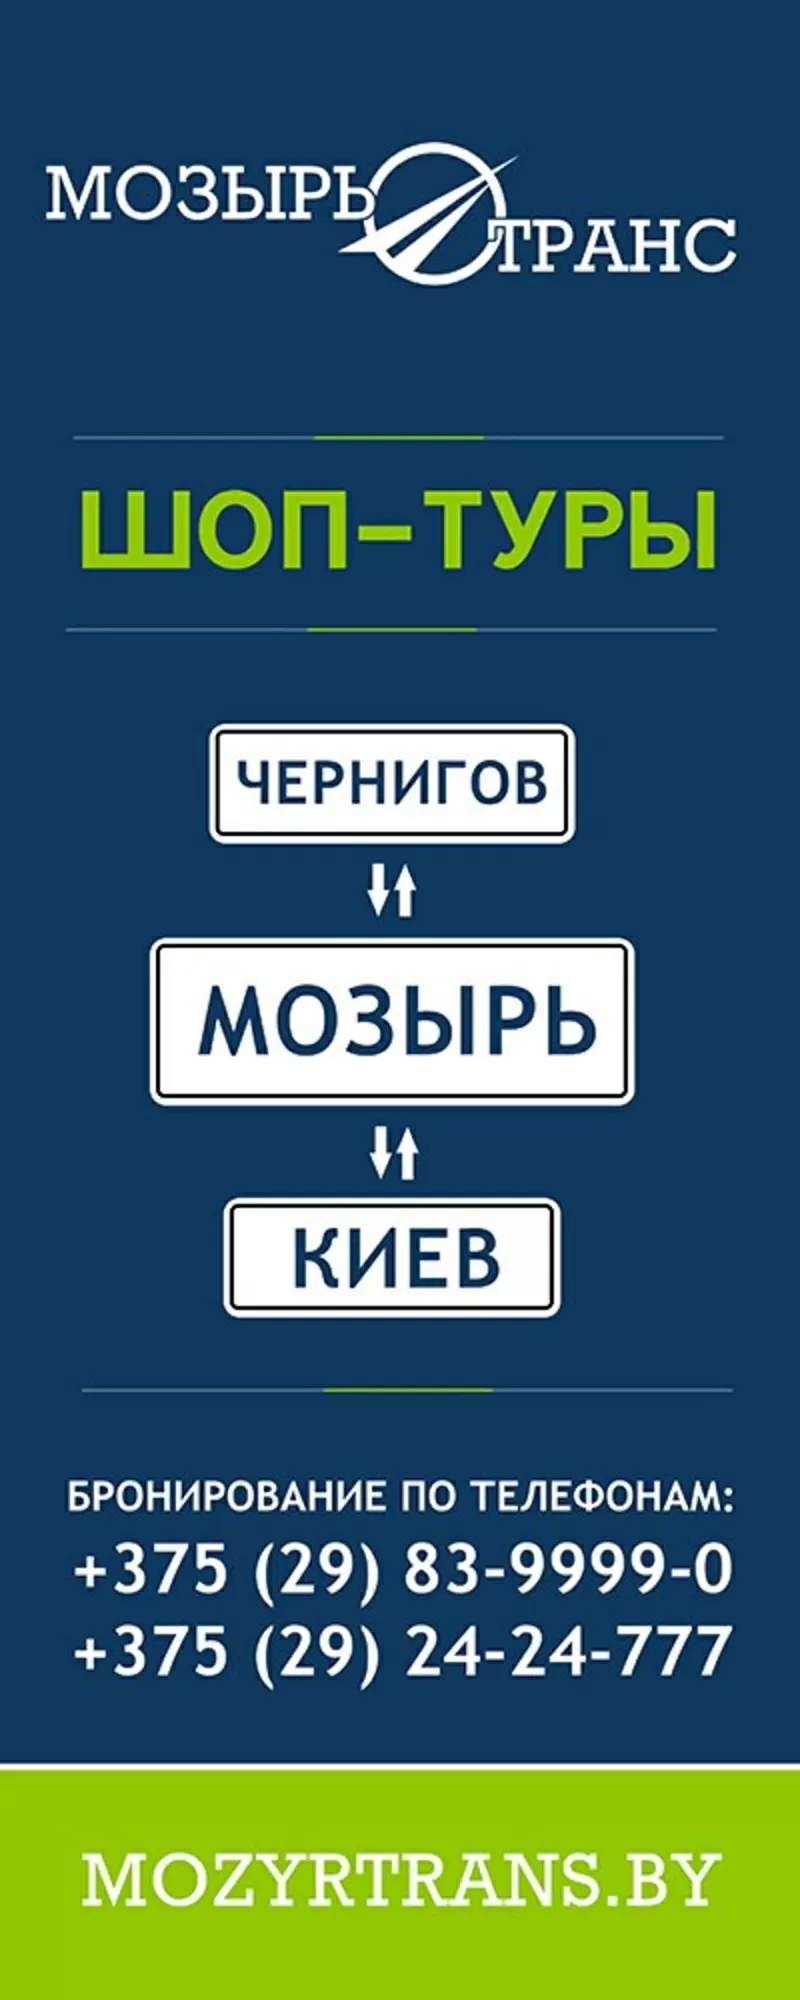 Перевозка пассажиров. Шоп-туры Мозырь-Киев